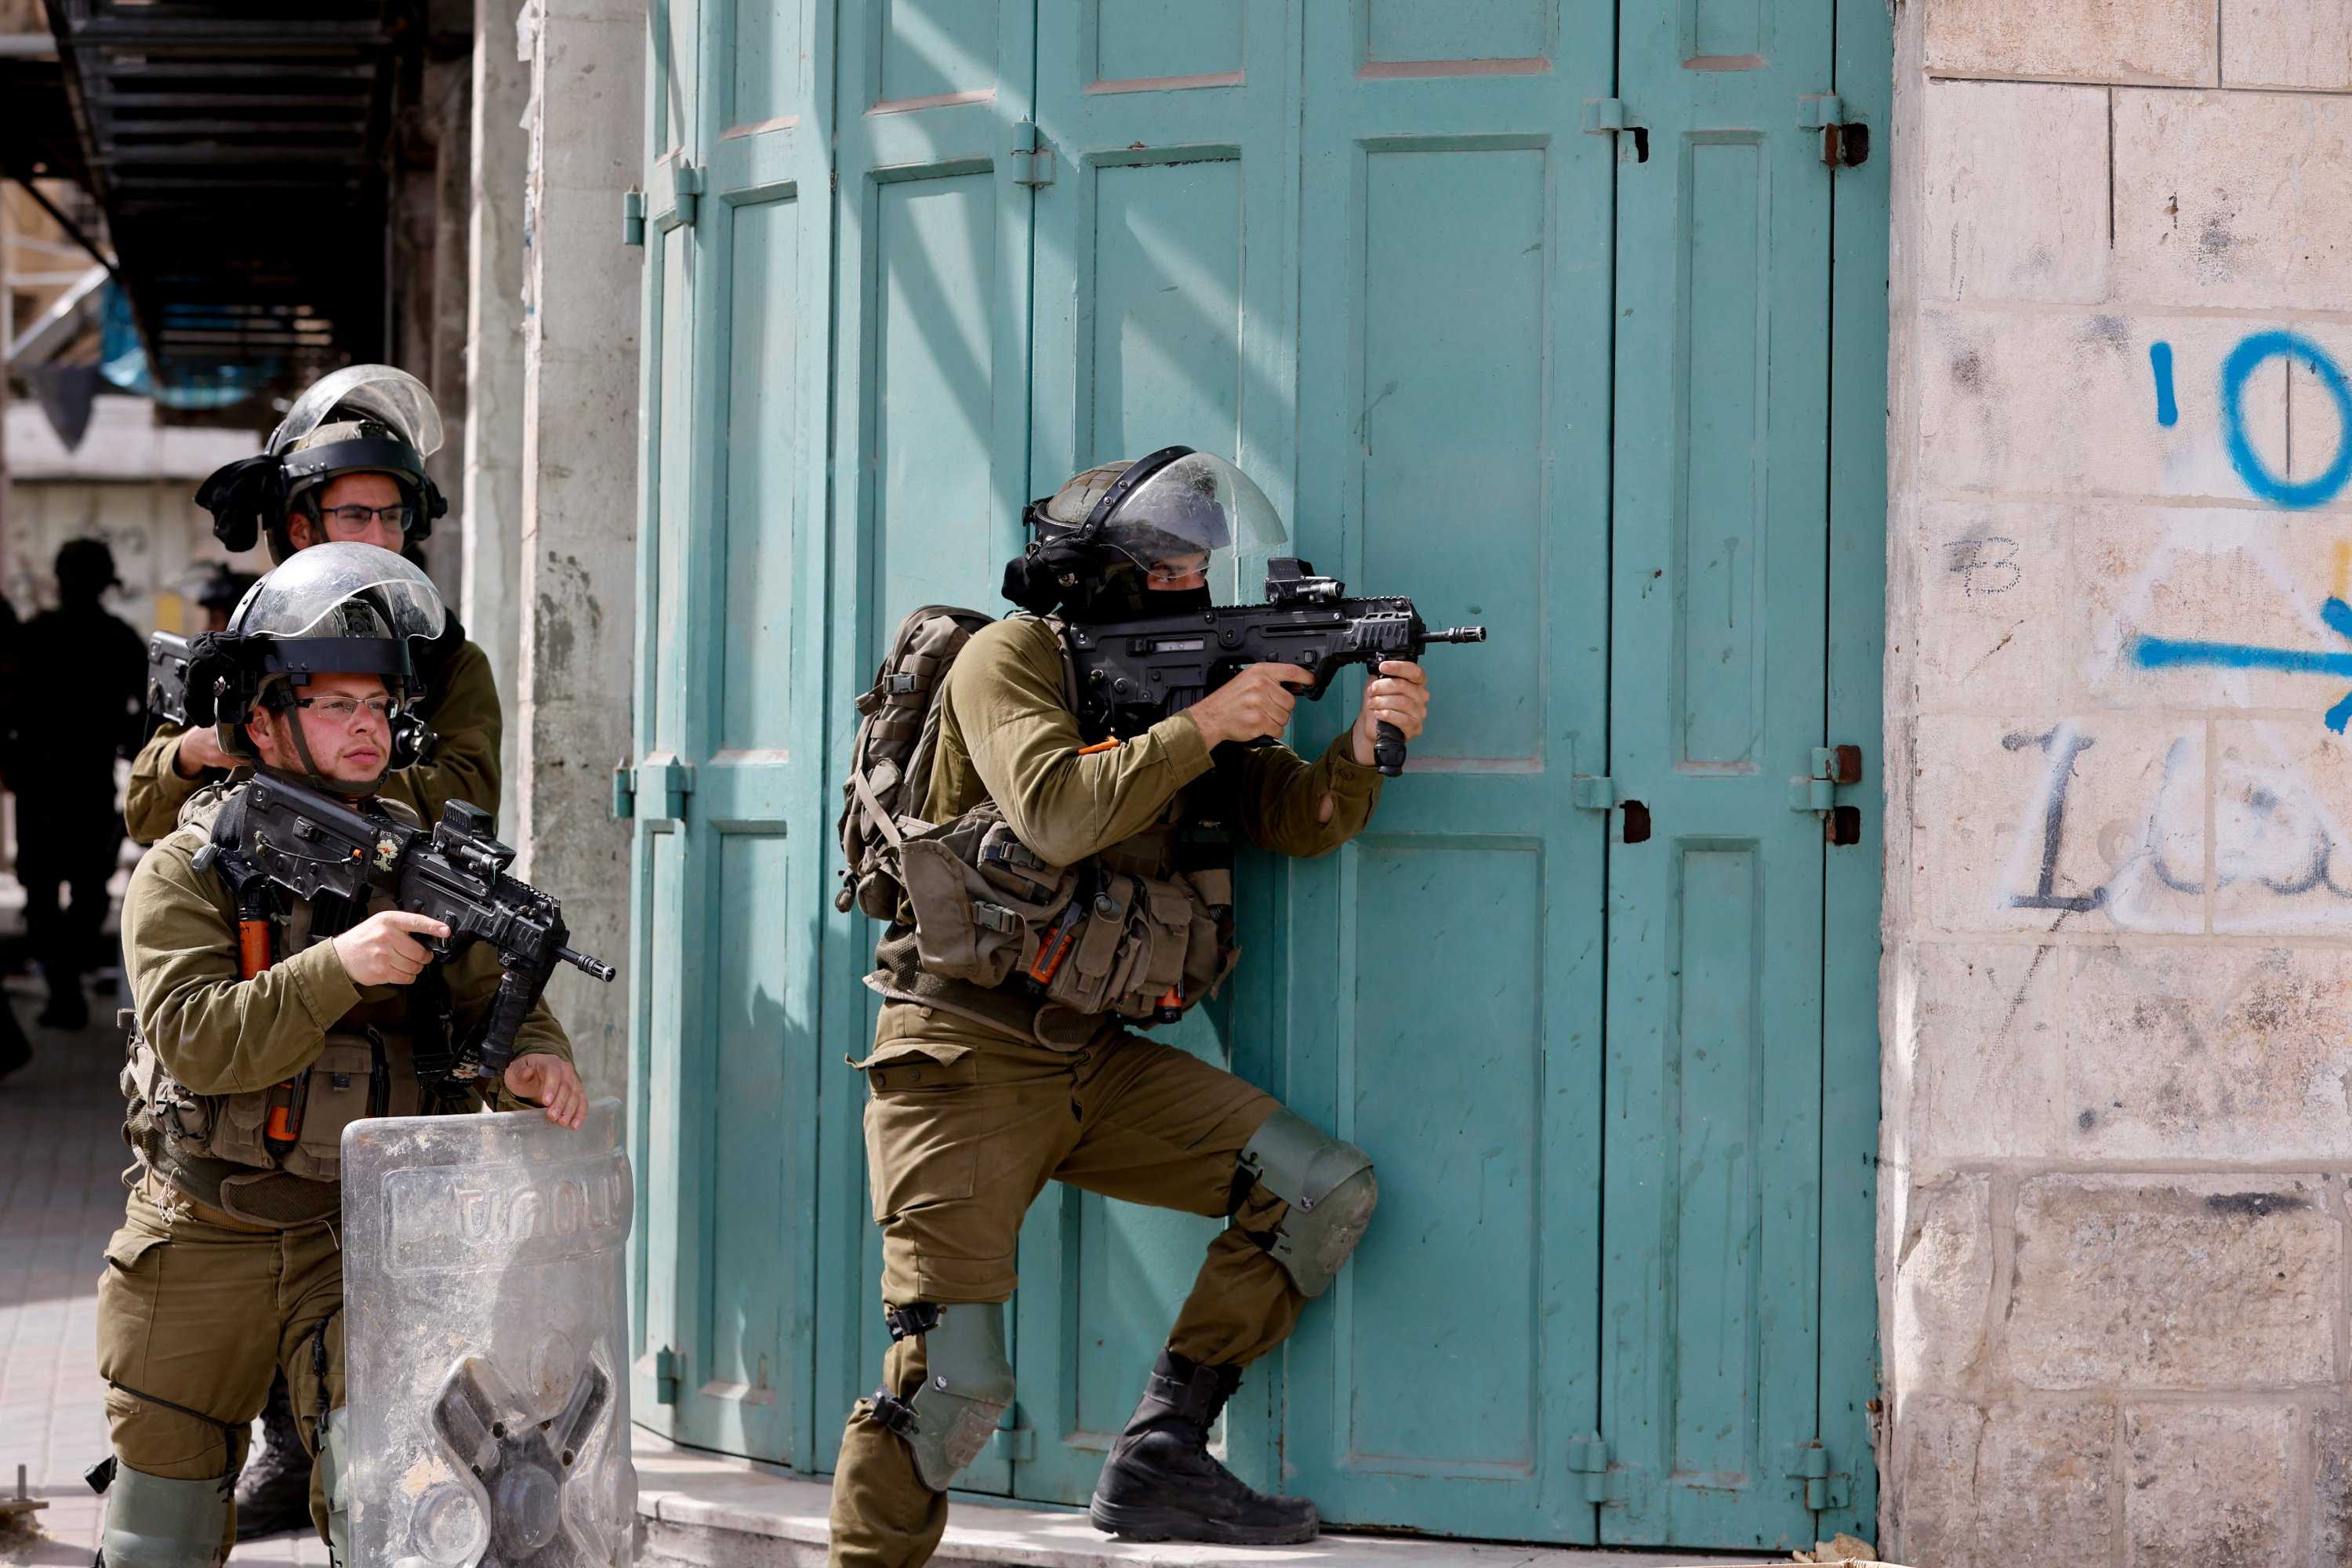 Gawat! Pasukan Israel Tembak Mati 3 Warga Palestina dalam Operasi Jumat Pagi, Kok Bisa?